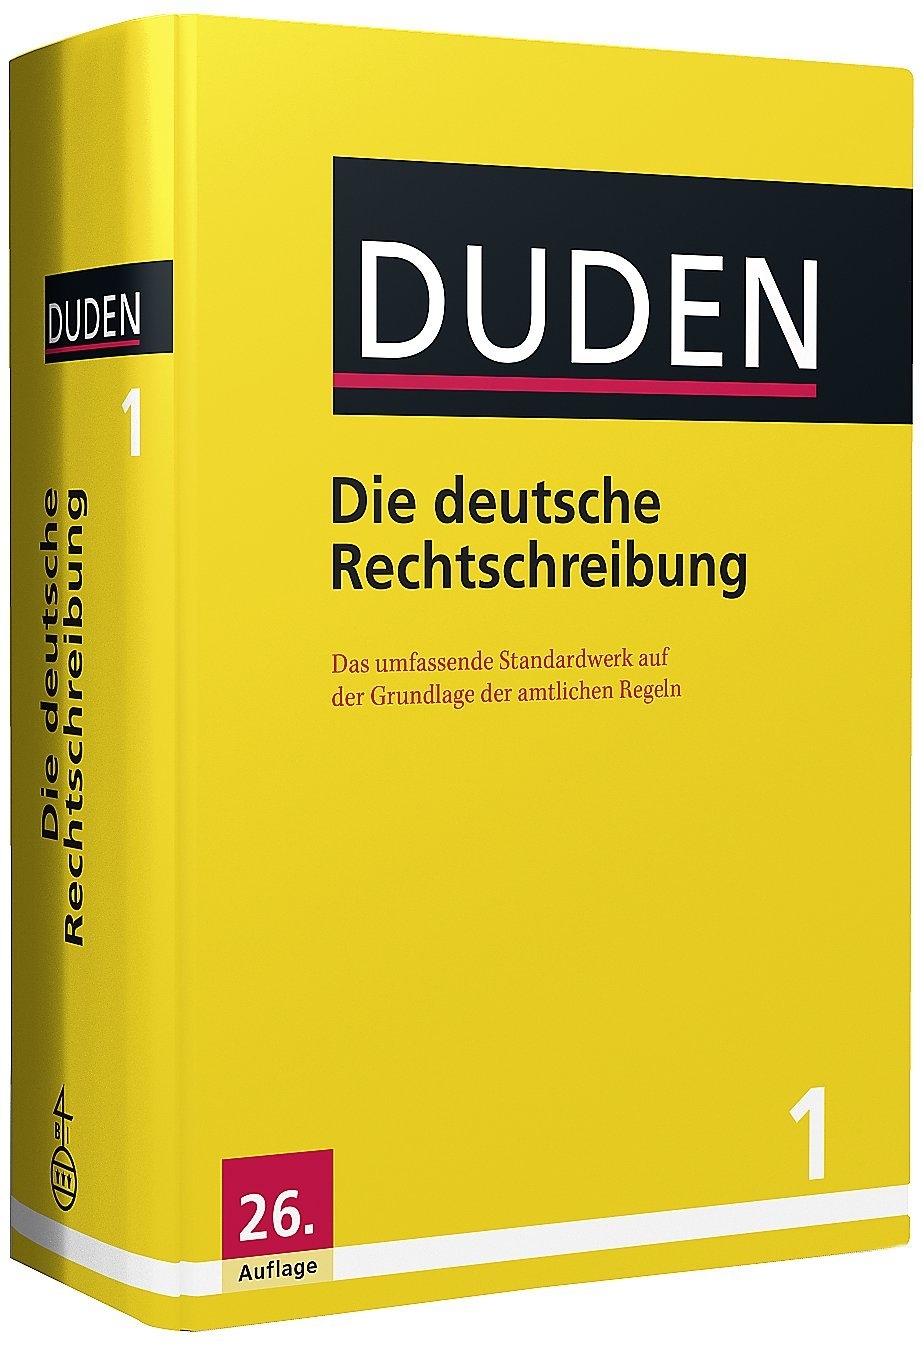 DUDEN Band 1 783411040179 Die Deutsche Rechtschreibung Die Deutsche Rechtschreibung